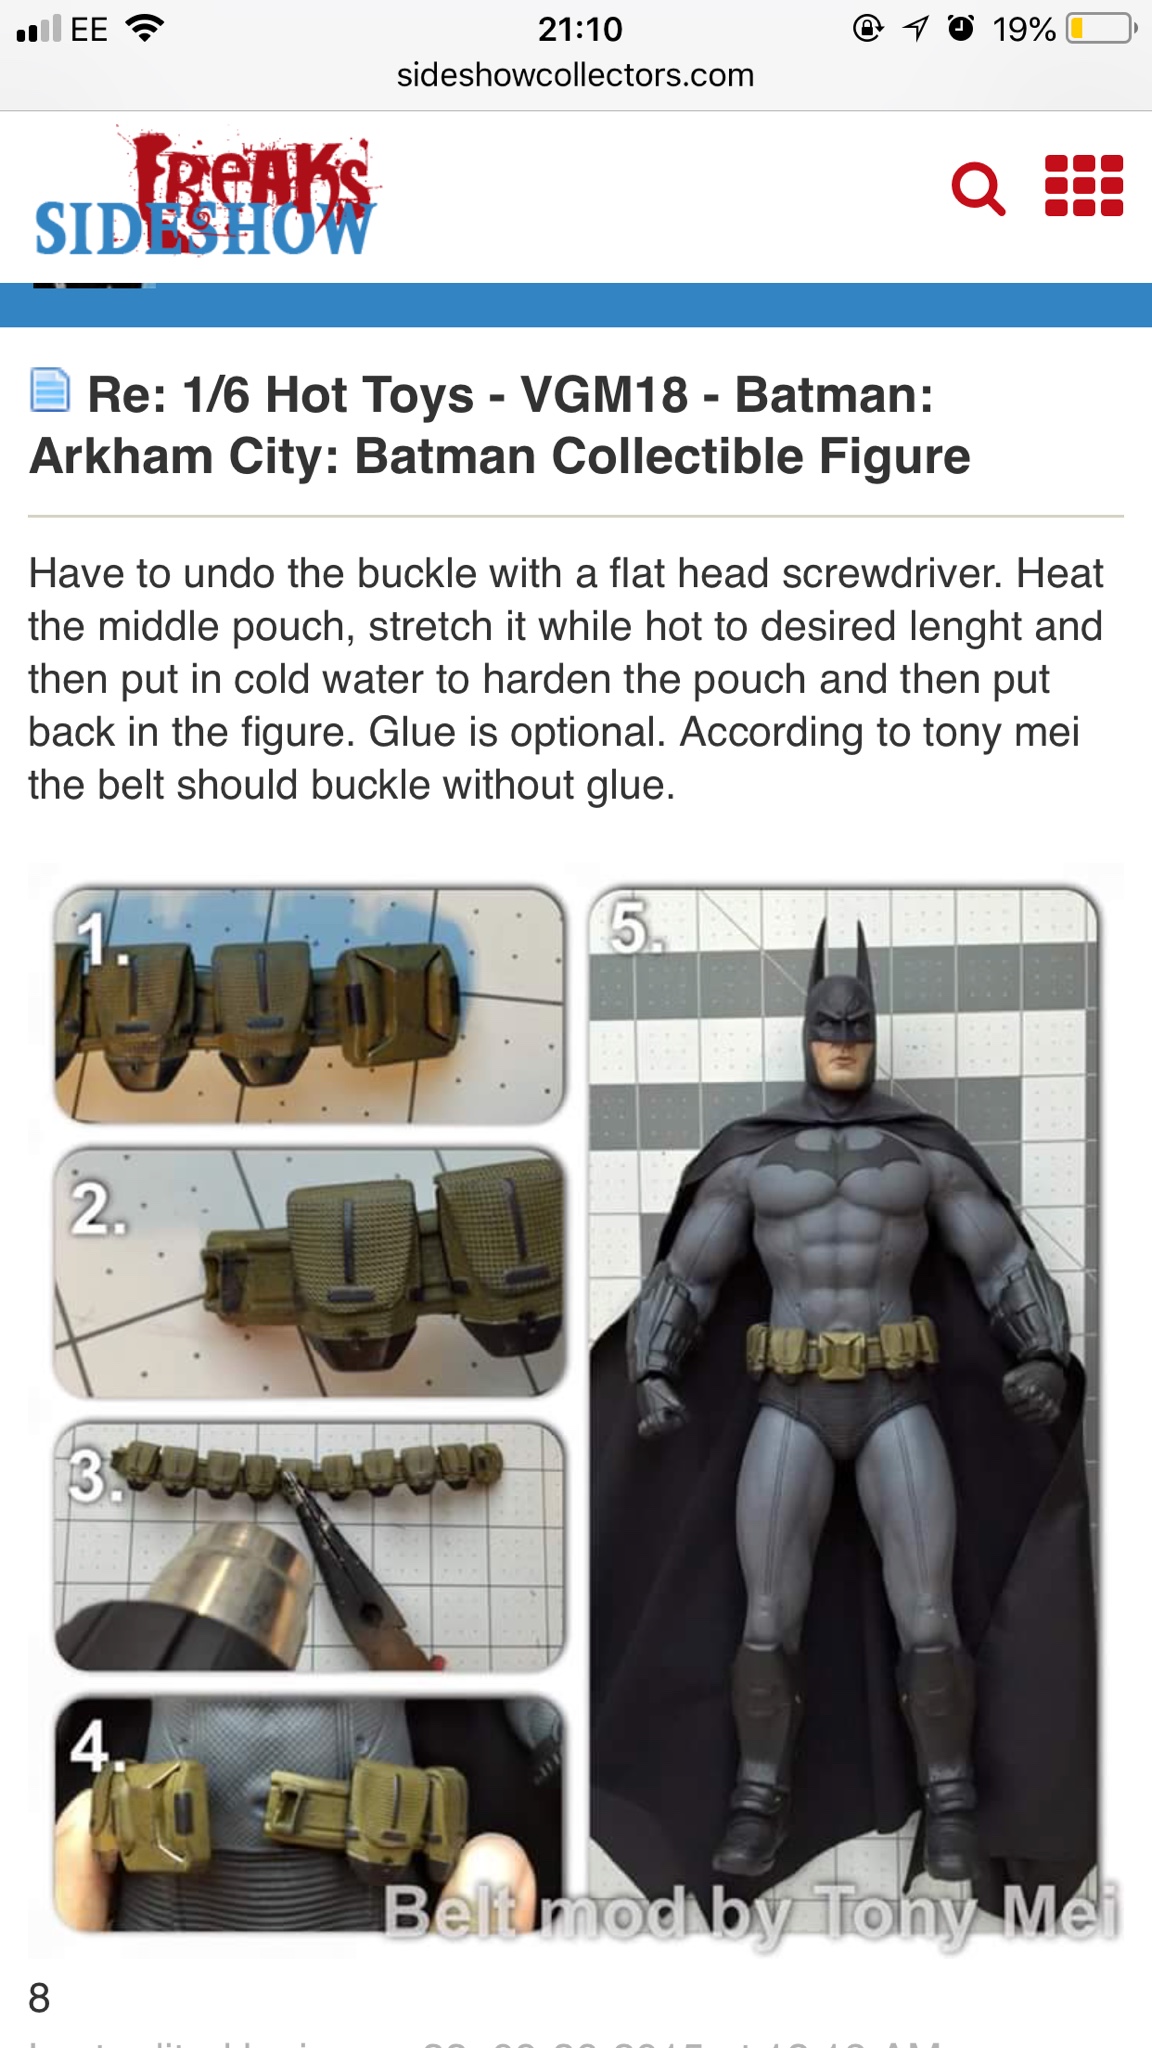 1 6 Hot Toys Vgm18 Batman Arkham